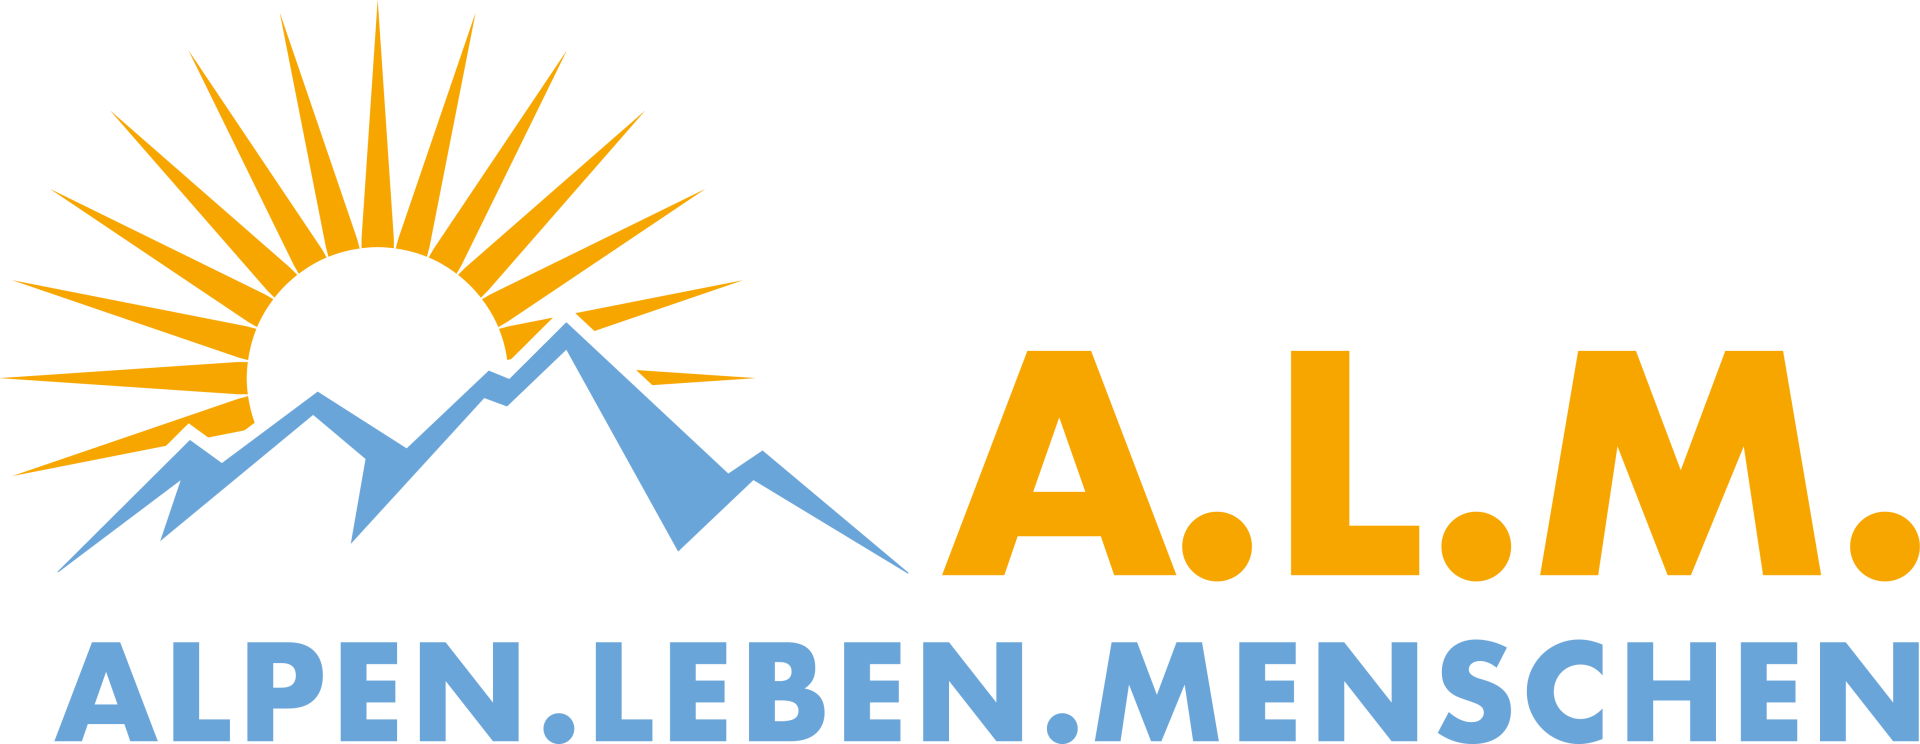 Es ist das Logo des ALM-Projekts zu sehen.